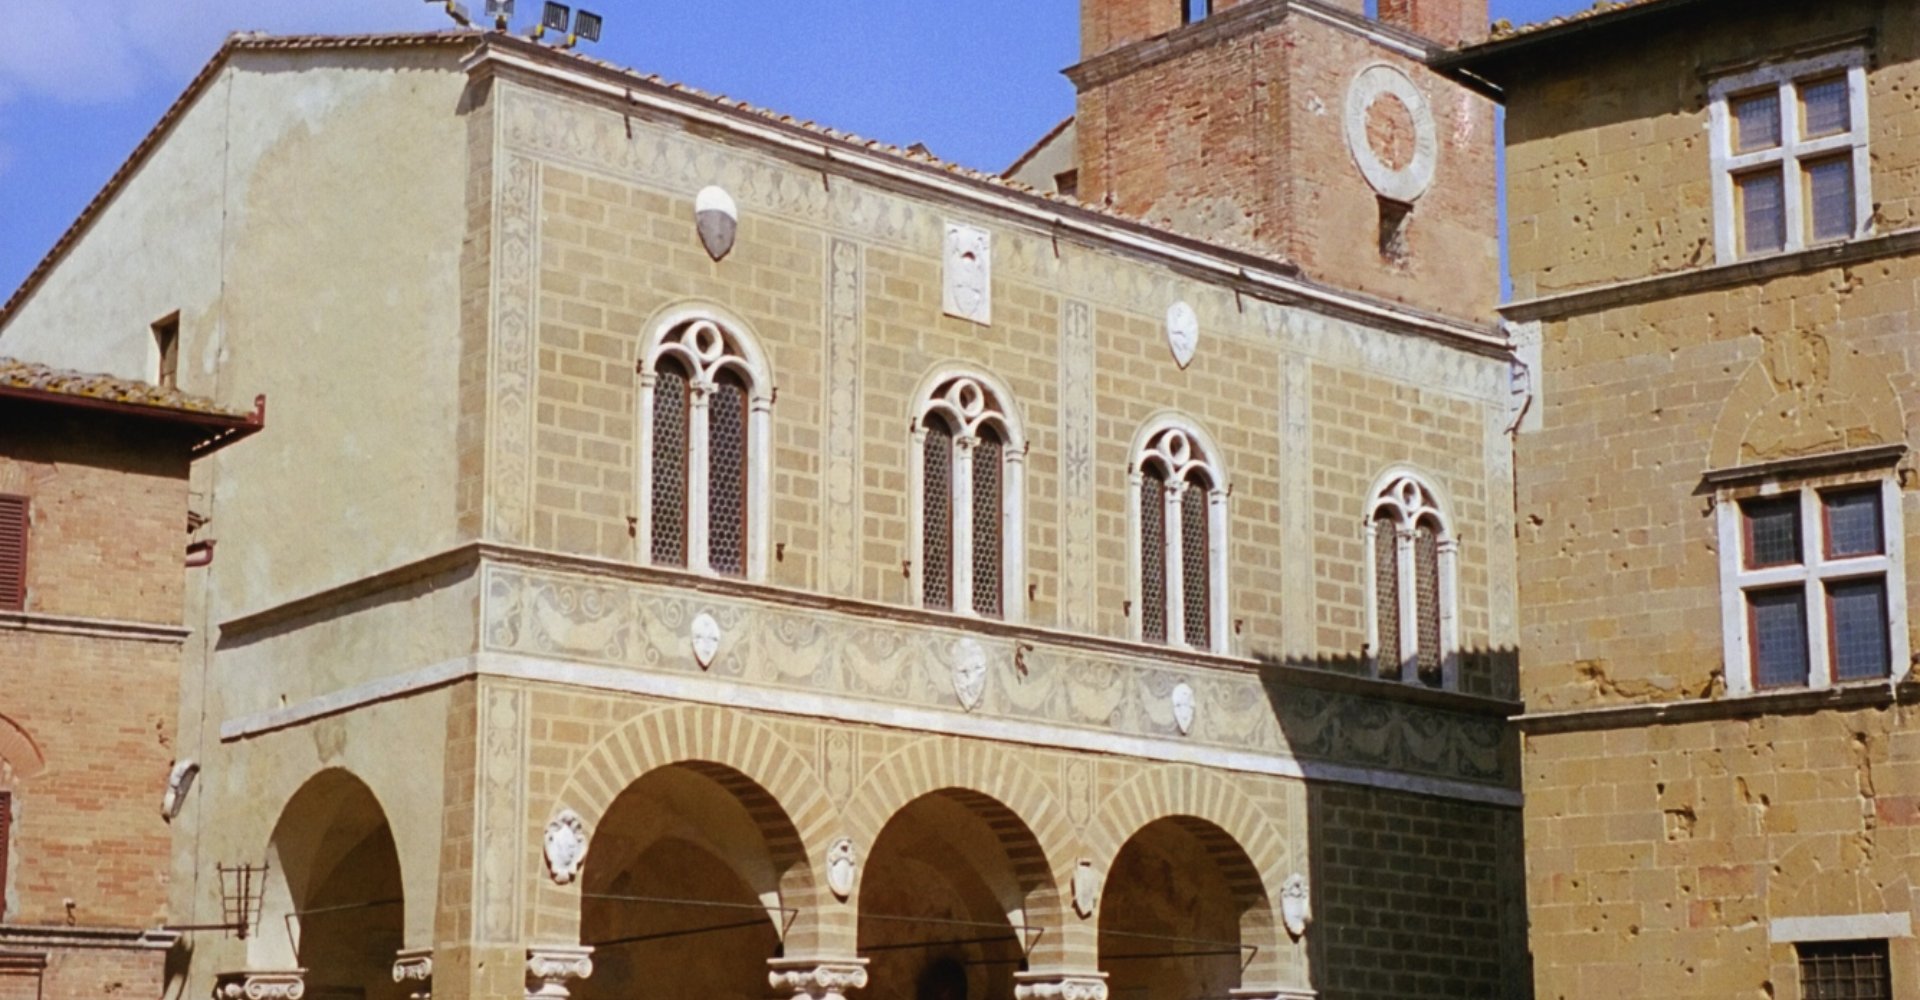 Palazzo Comunale von Pienza